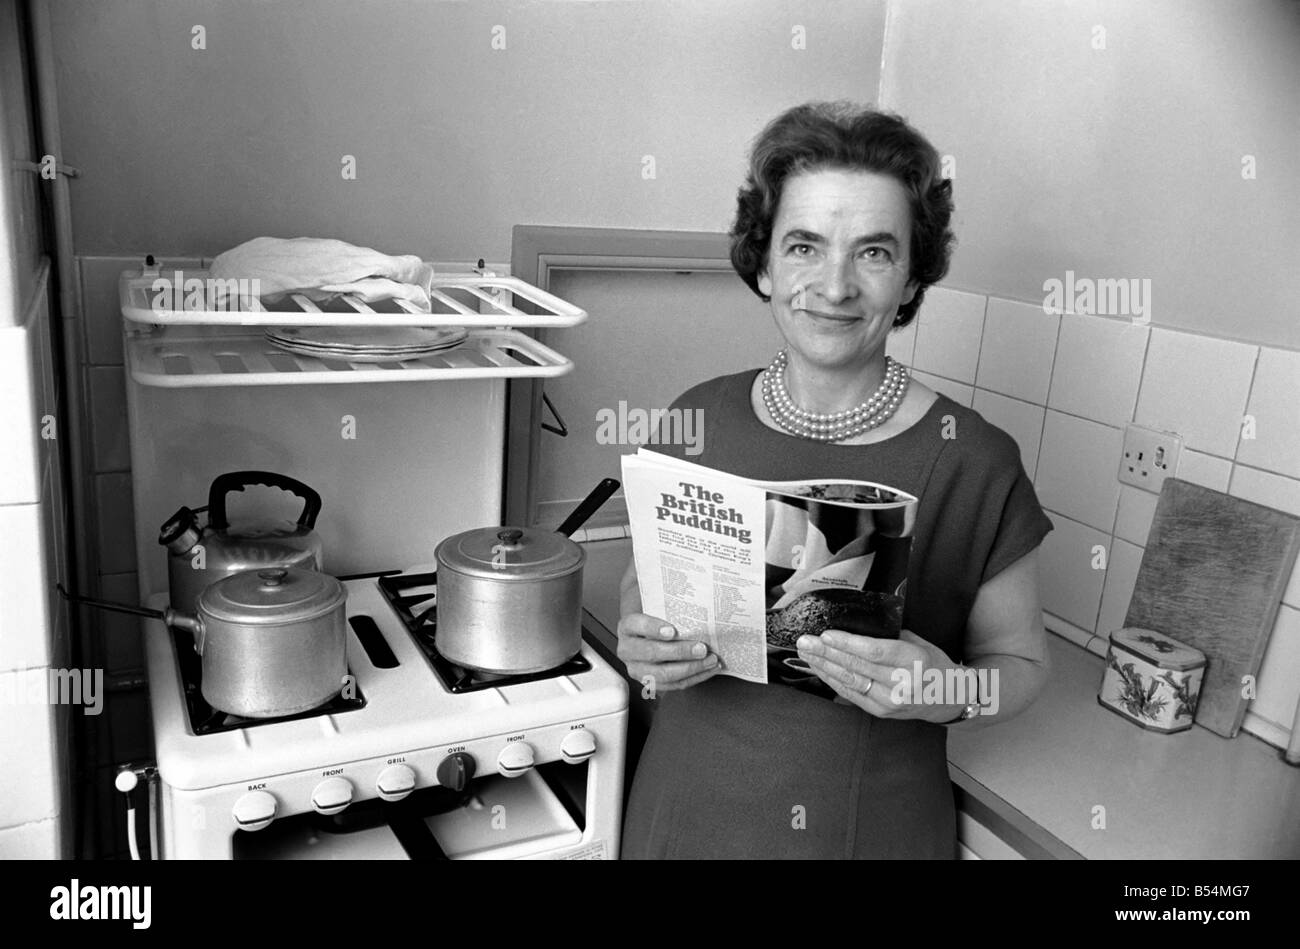 Ménage - les tâches domestiques de la cuisson. Une femme à l'aide de son gaz sur dans la cuisine de sa maison. Décembre 1969 Z11588-002 Banque D'Images